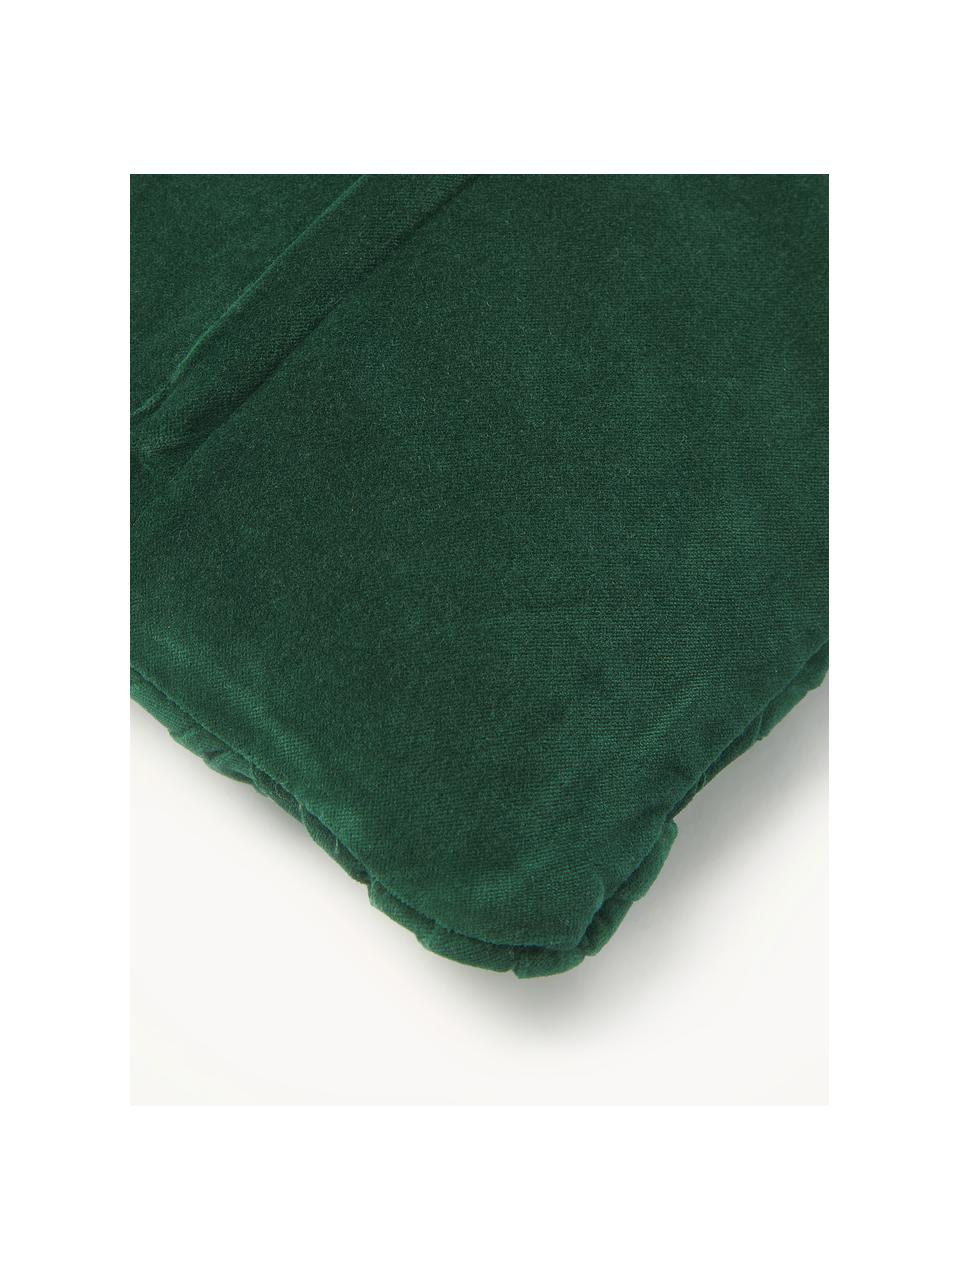 Poszewka na poduszkę z aksamitu Sina, Aksamit (100% bawełna), Ciemny zielony, S 45 x D 45 cm